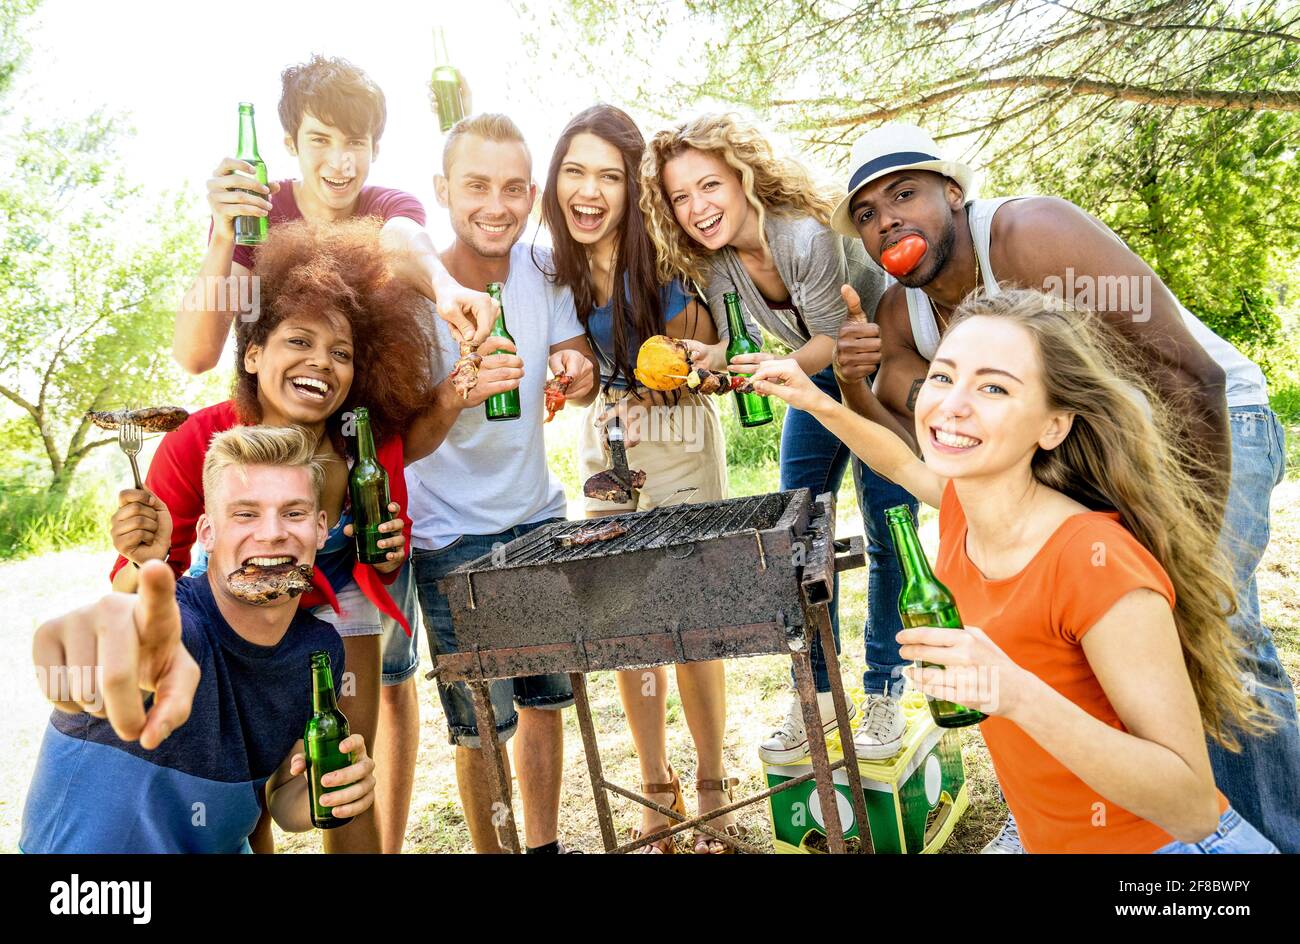 Glückliche multirassische Freunde, die Spaß an Picknick Grill Gartenparty haben - Freundschaftskonzept mit multiethnischen Menschen, die Gruppenfoto machen Stockfoto